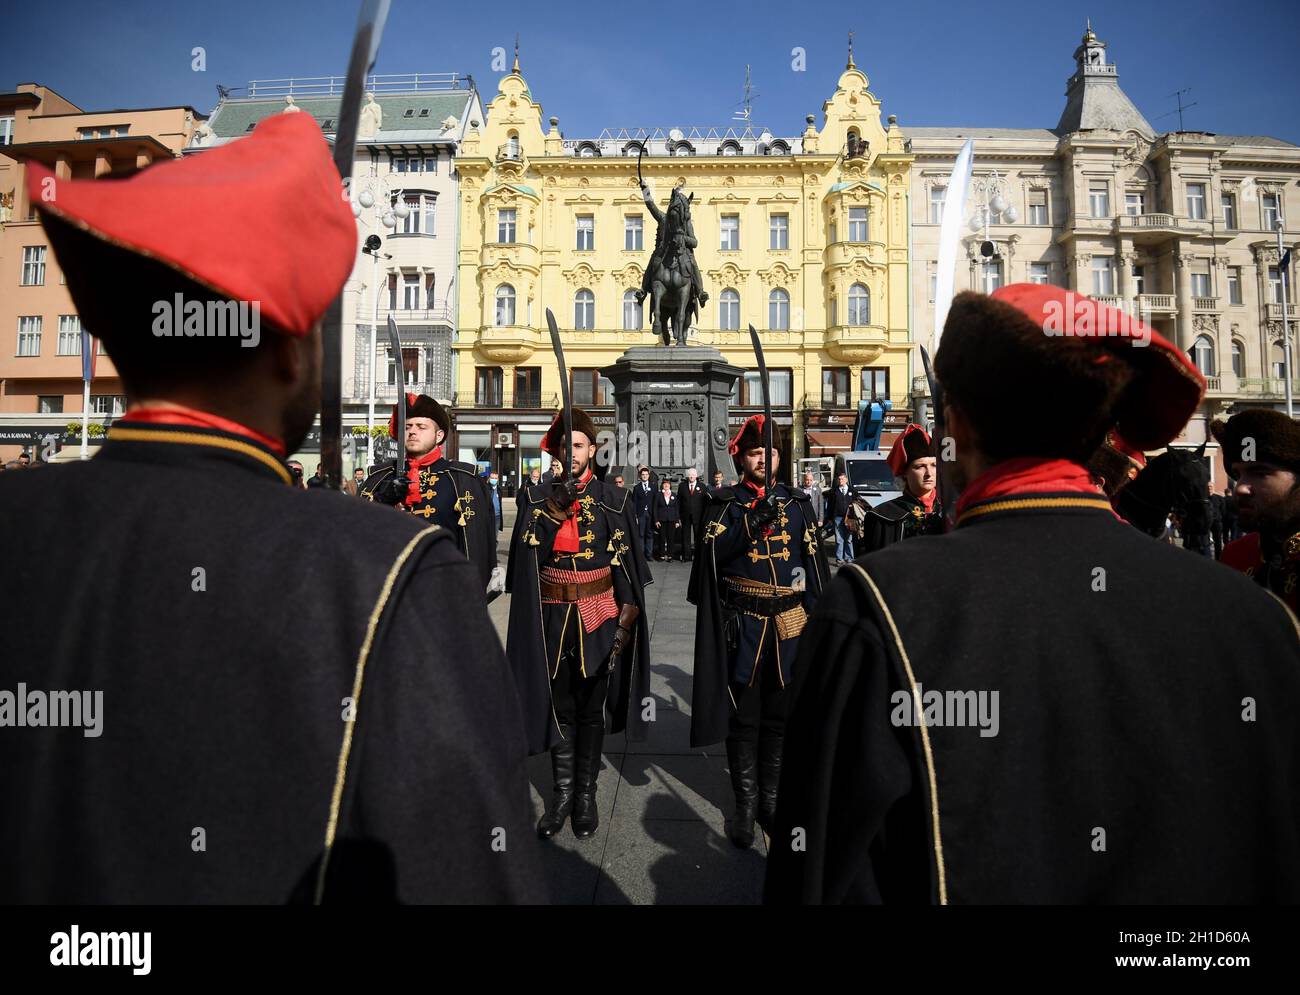 (211018) -- ZAGREB, 18. Oktober 2021 (Xinhua) -- Soldaten in traditionellen Militäruniformen treten am 18. Oktober 2021 bei der Feier des Cravat-Tages in Zagreb, Kroatien, auf. Die Kroaten feiern den Welt-Cravat-Tag jedes Jahr am 18. Oktober. Der Cravat, Symbol für Kultur und Stil, entstand aus den roten Halstüchern, die von kroatischen Soldaten getragen wurden, die im 17. Jahrhundert in Frankreich dienten. (Marko Lukunic/Pixsell über Xinhua) Stockfoto